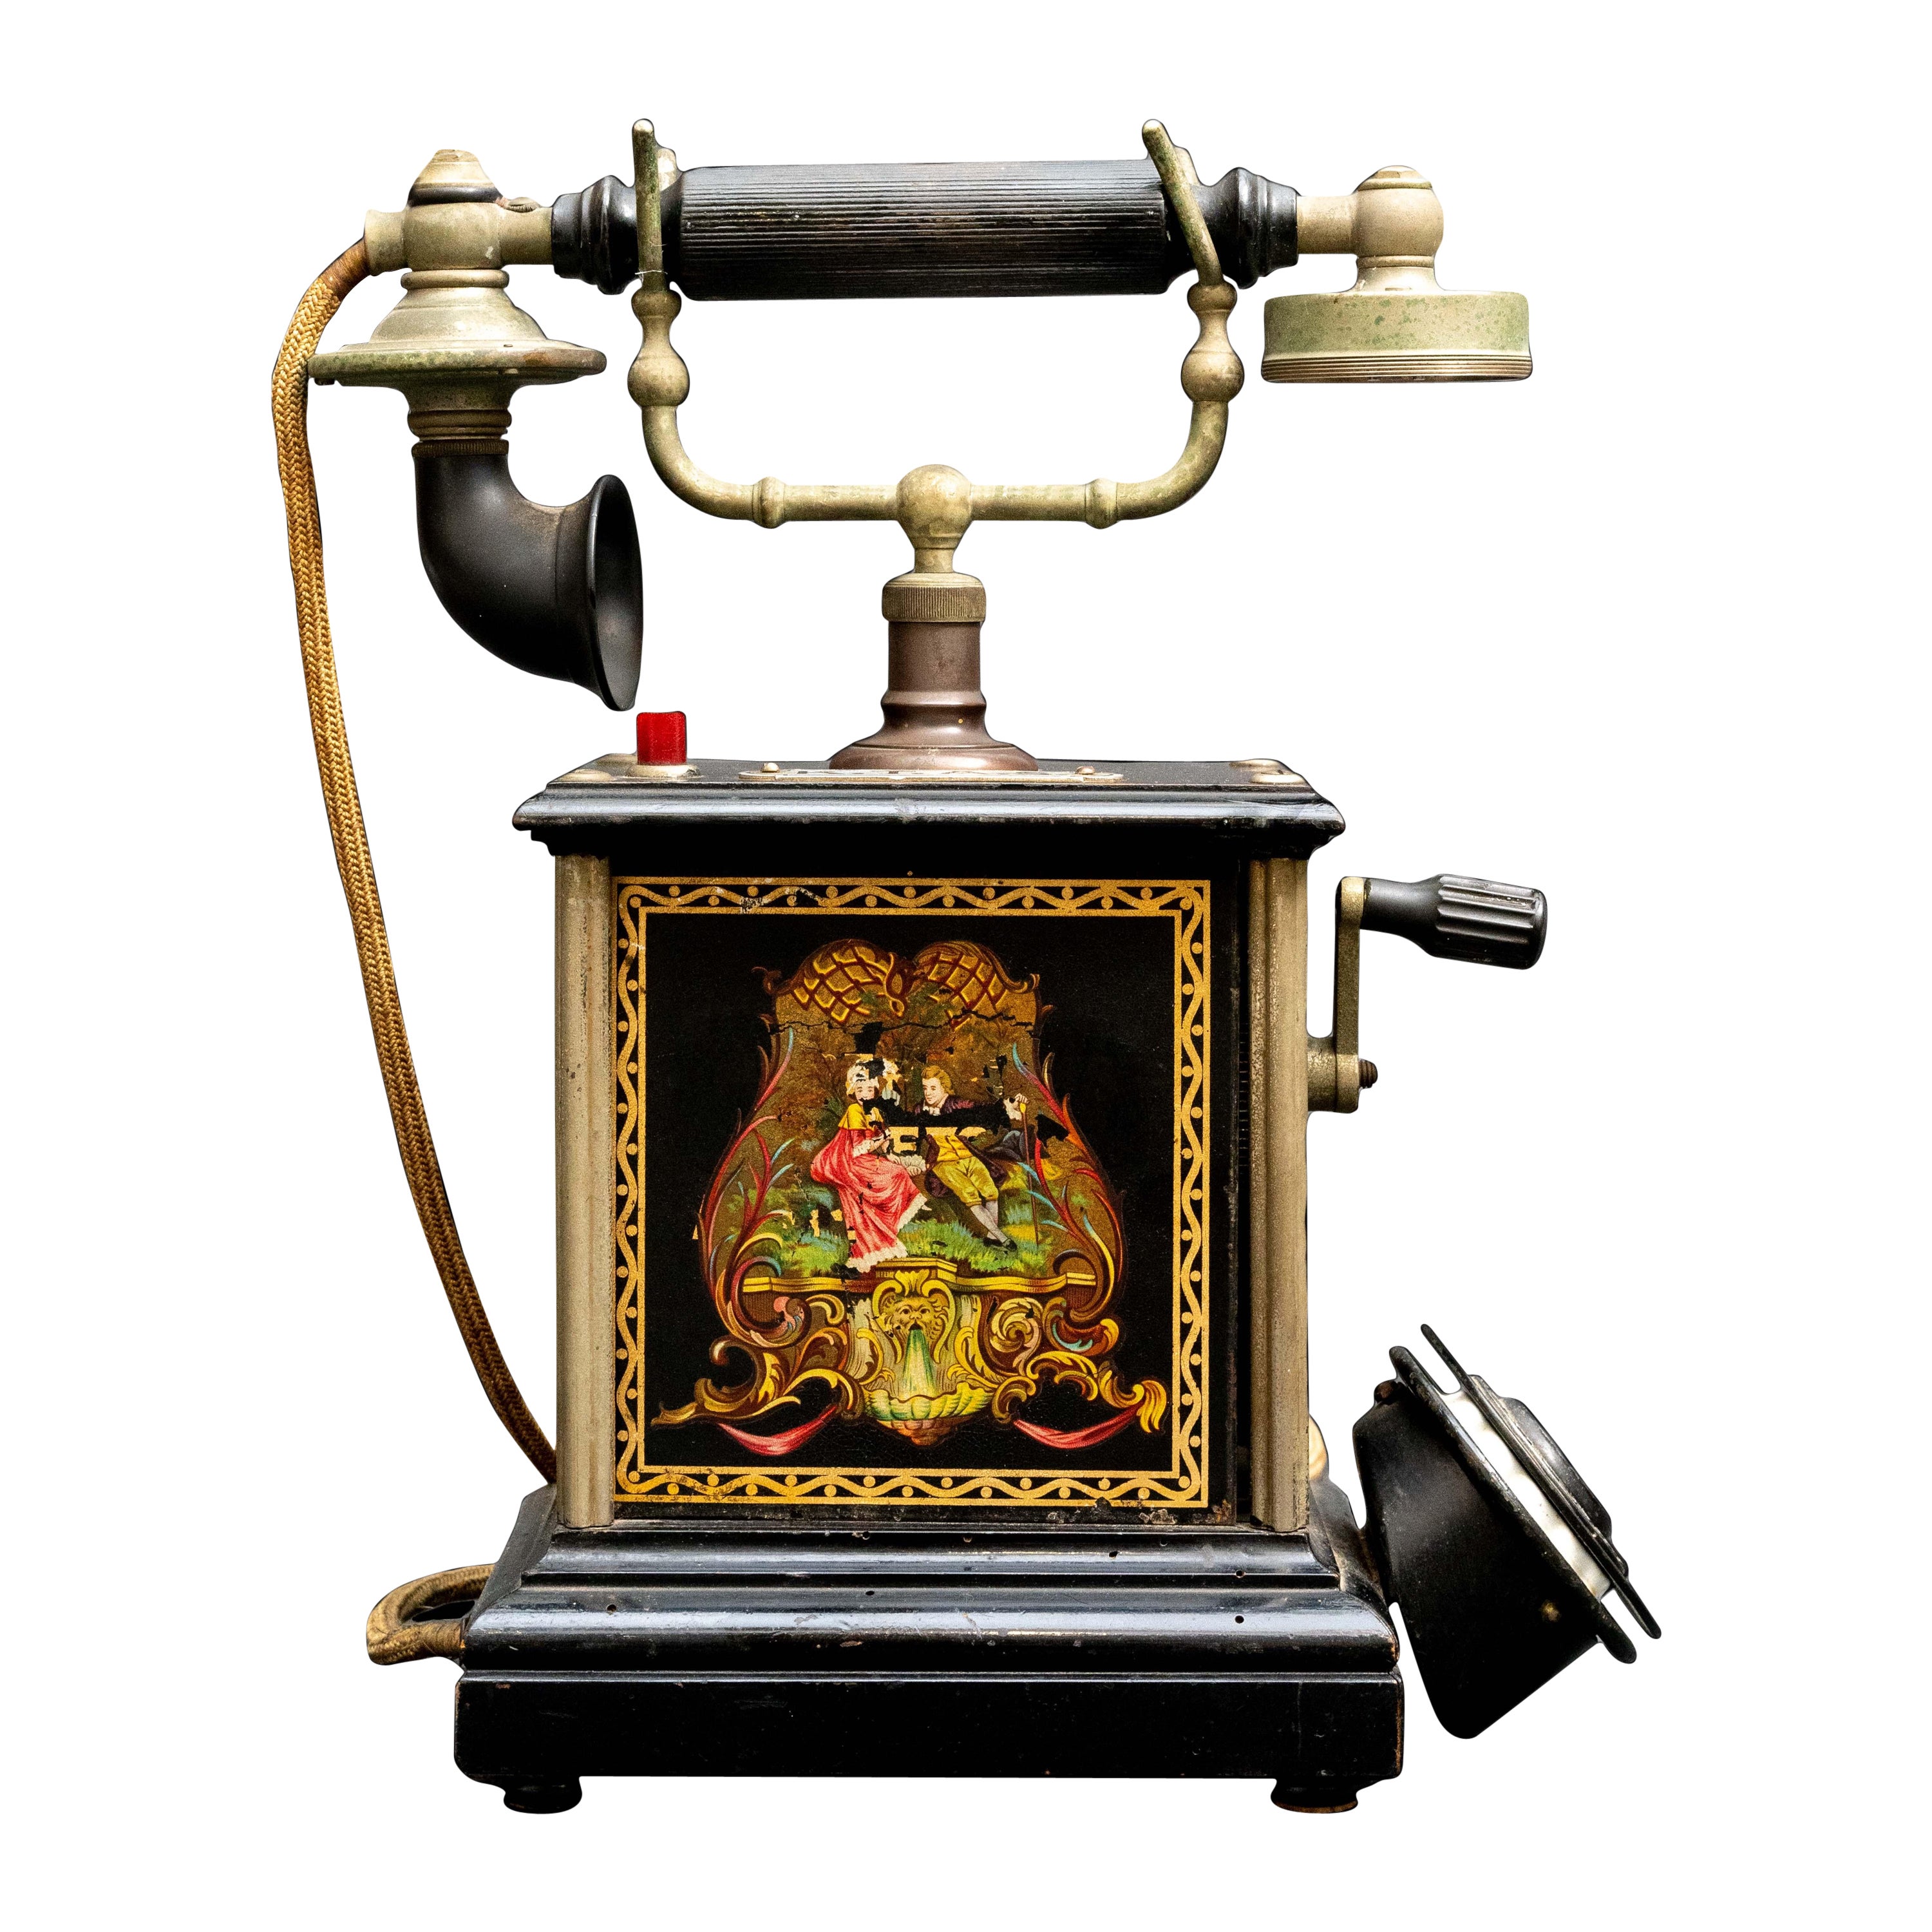 Antique KTAS Rotary Phone